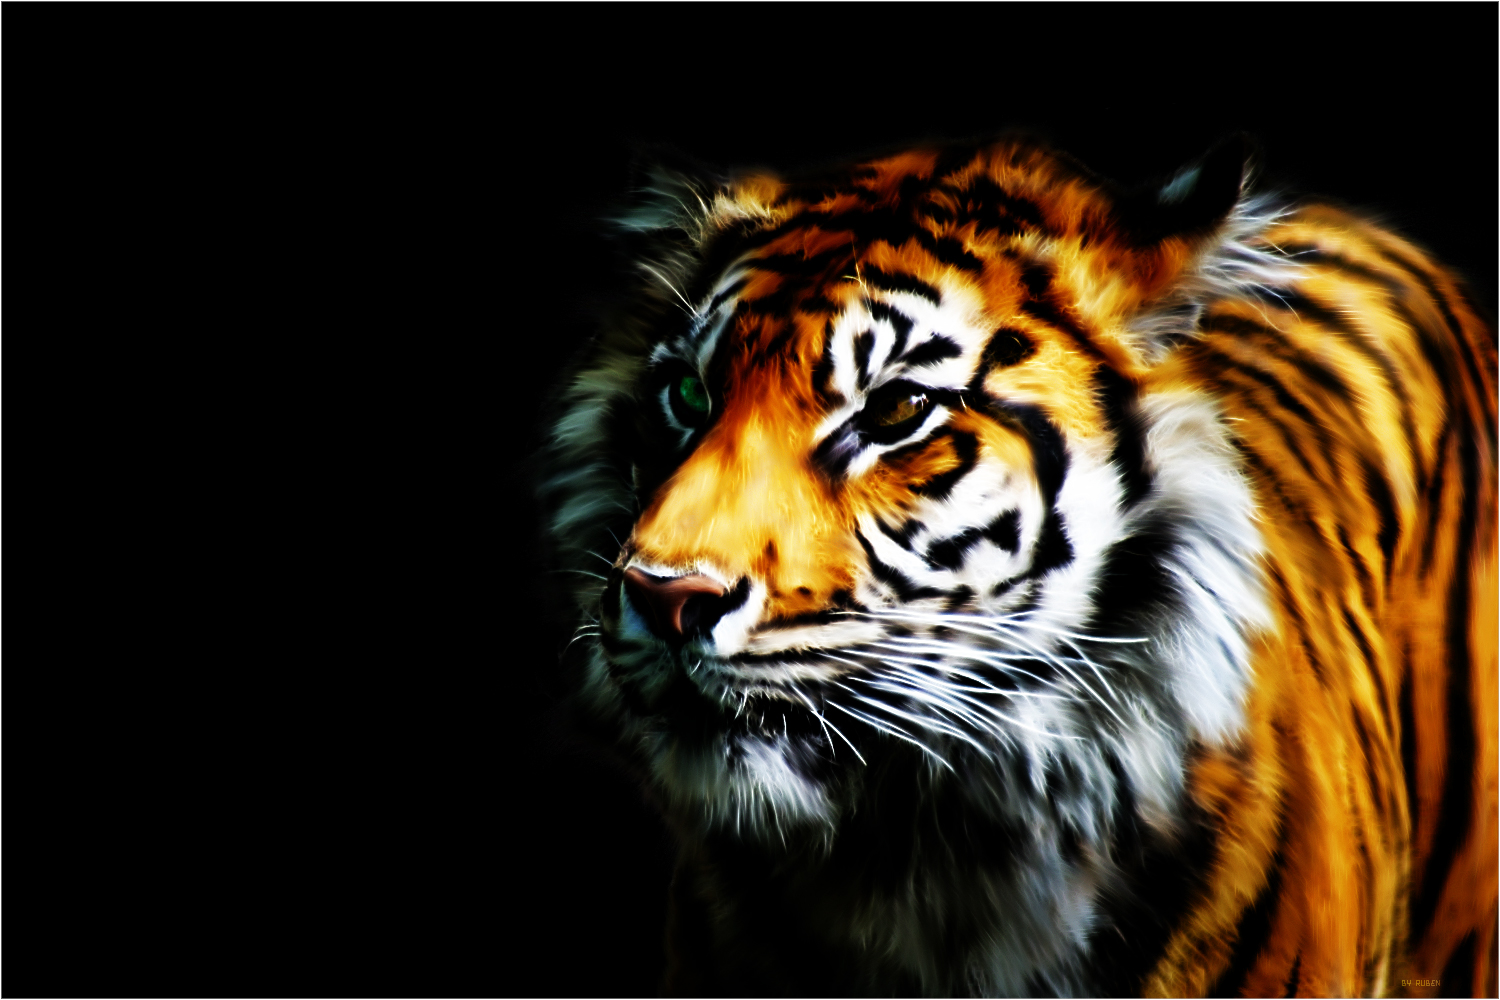 75+] Wallpaper Tiger - WallpaperSafari